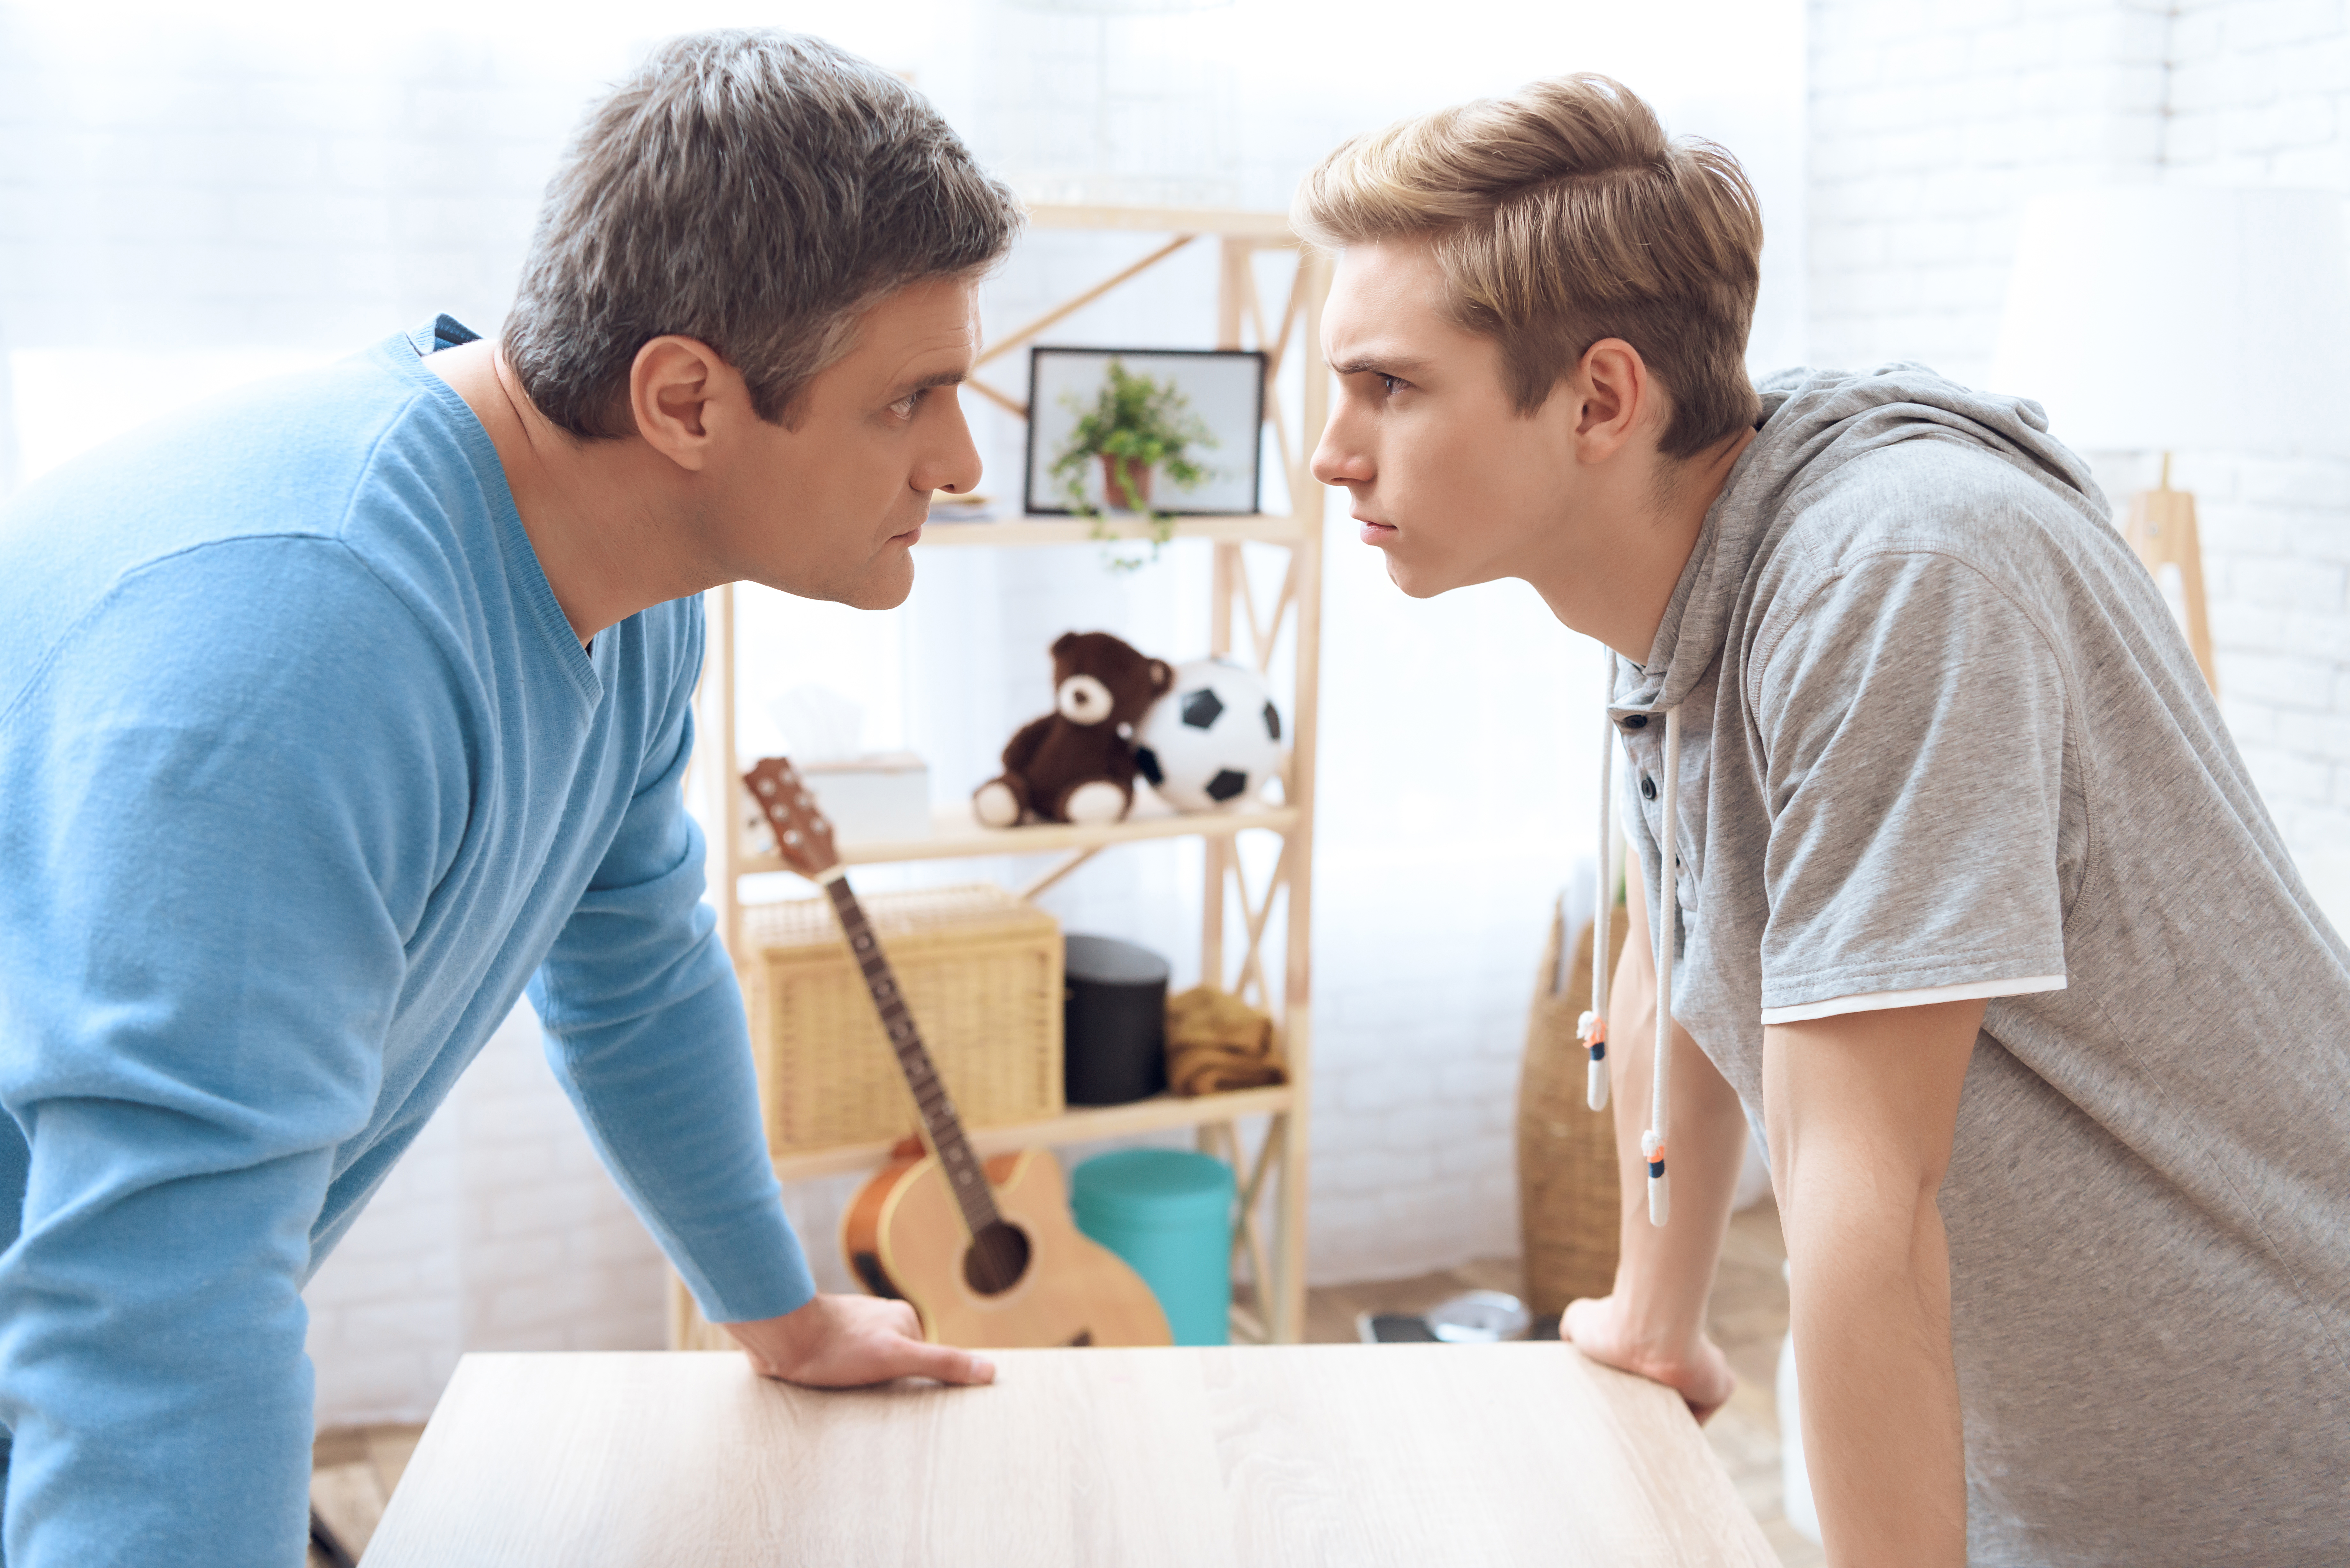 Matt s'est disputé avec ses parents au sujet de leur décision. | Source : Shutterstock